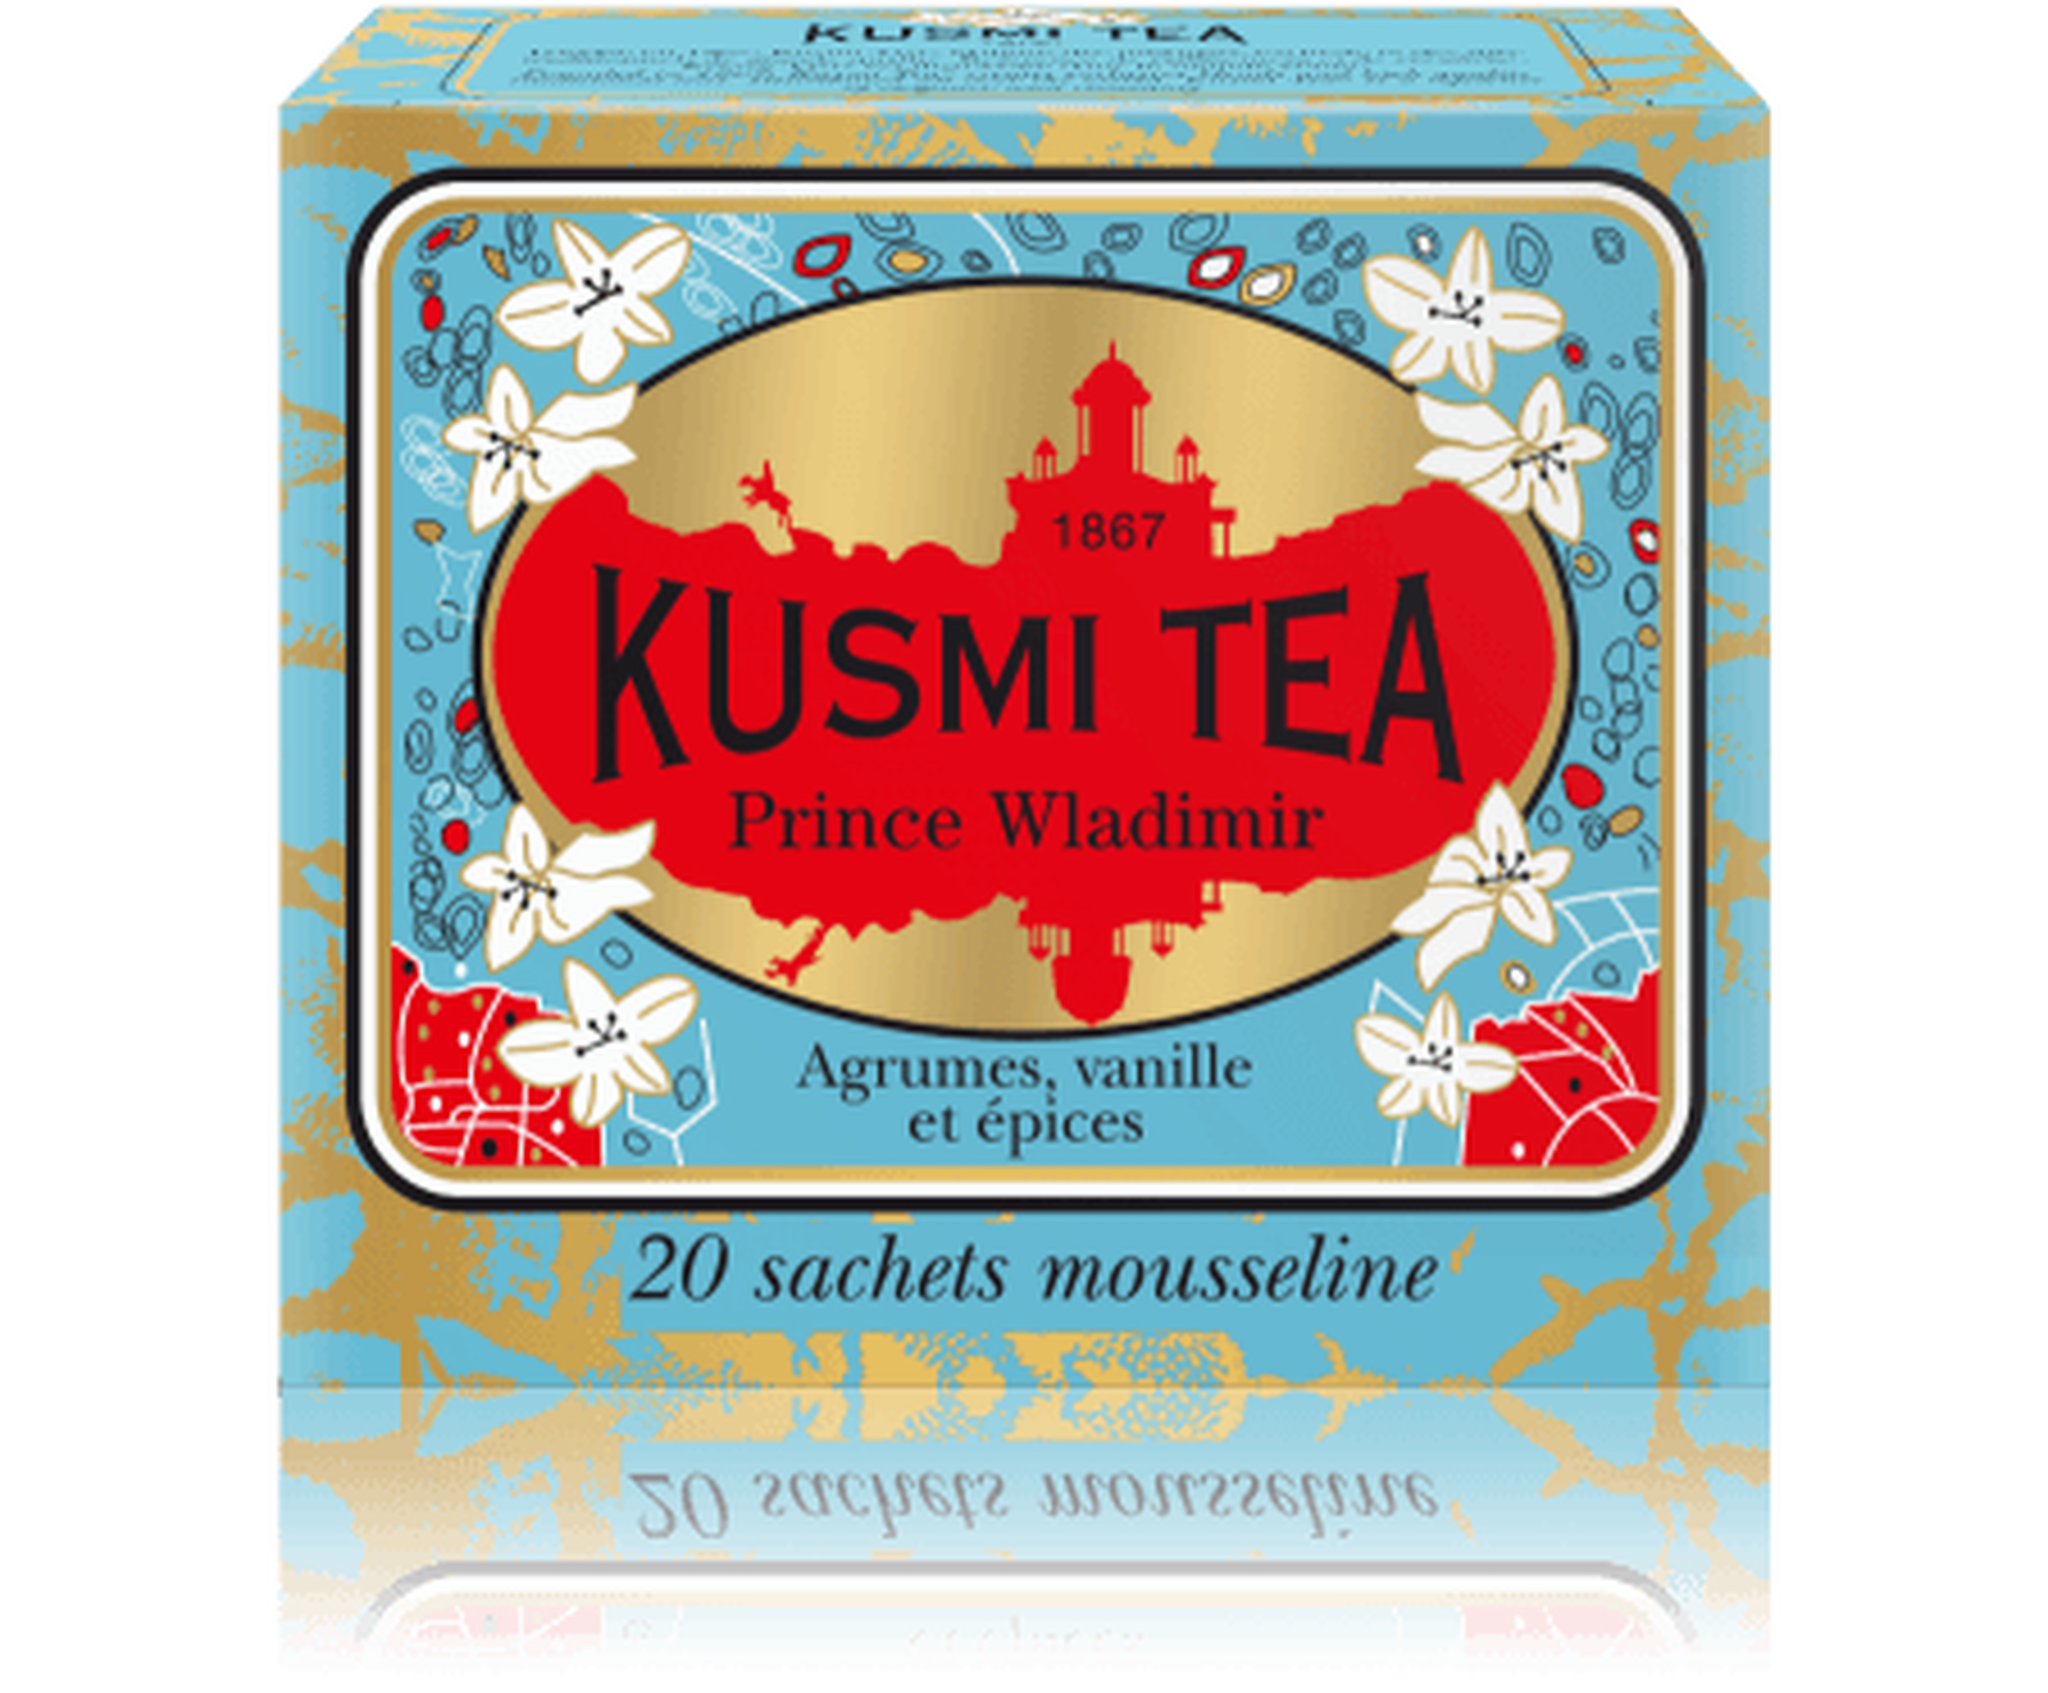 Prince Vladimir Tea